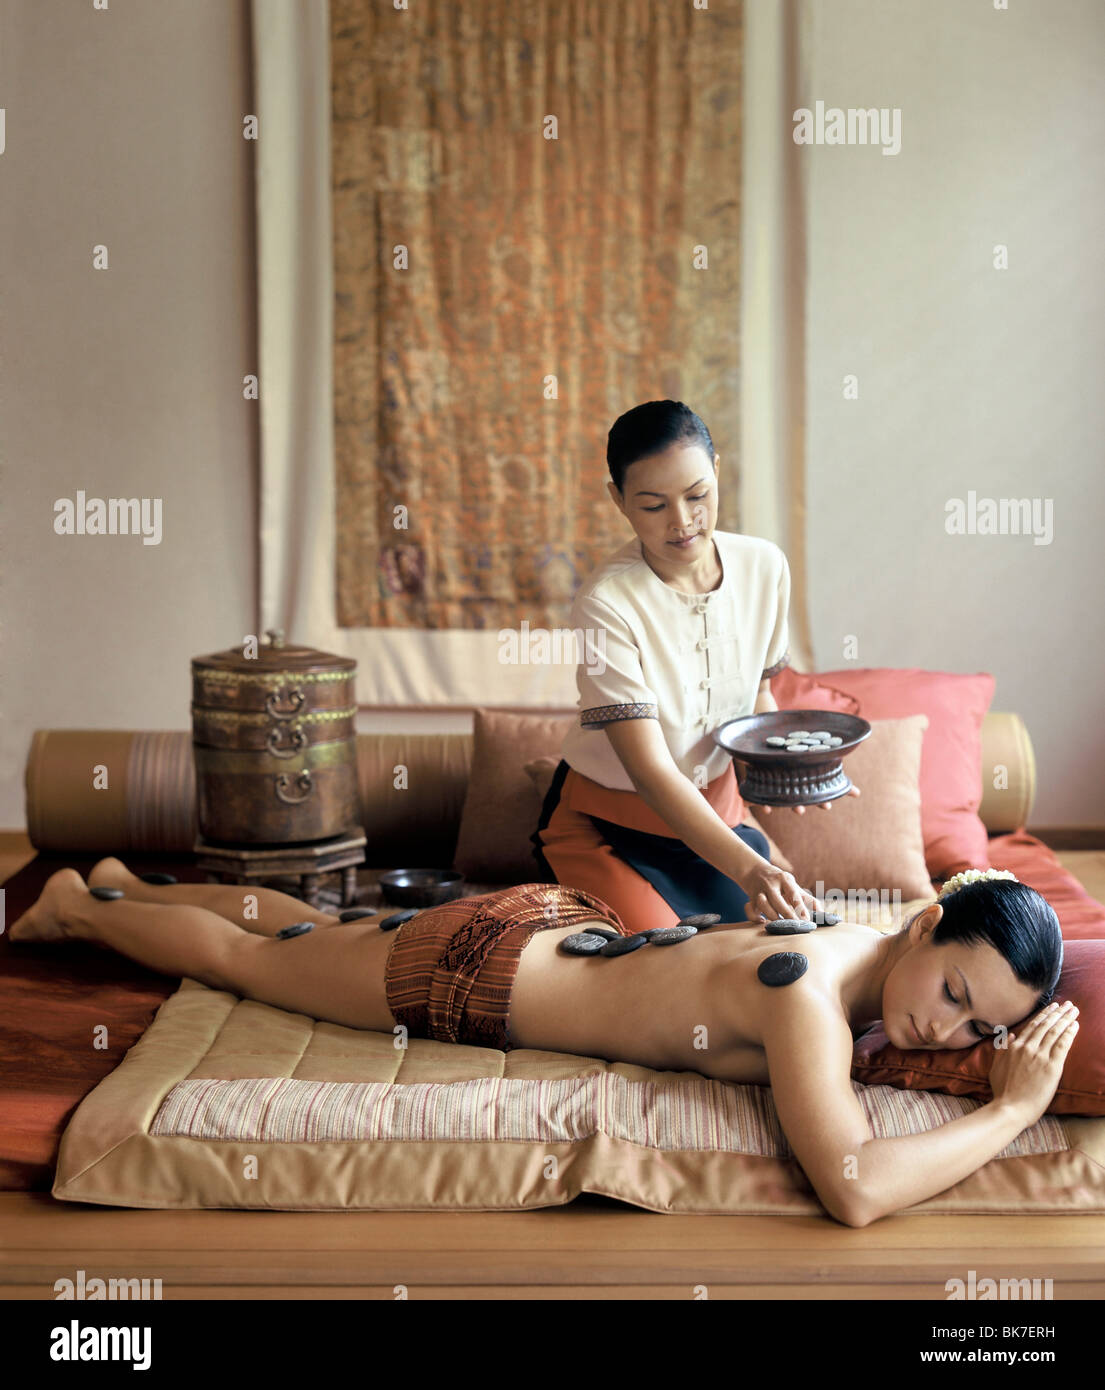 Bangkok Massage